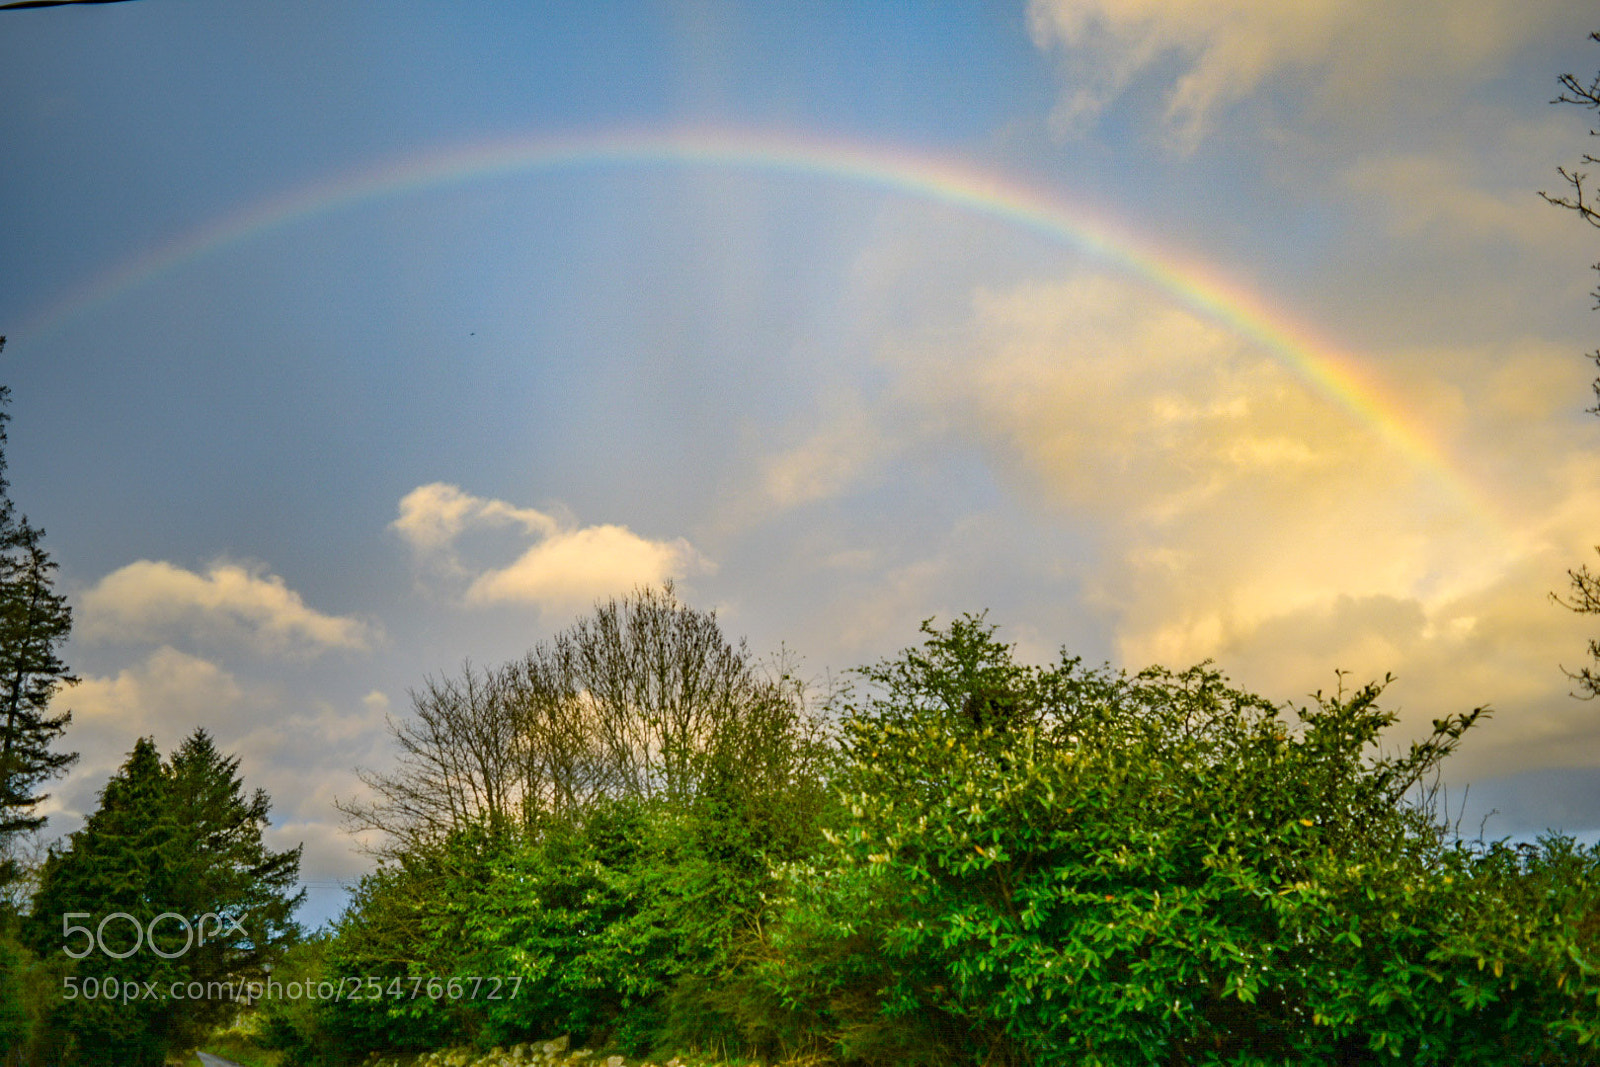 Nikon D5300 sample photo. Lovely rainbow photography